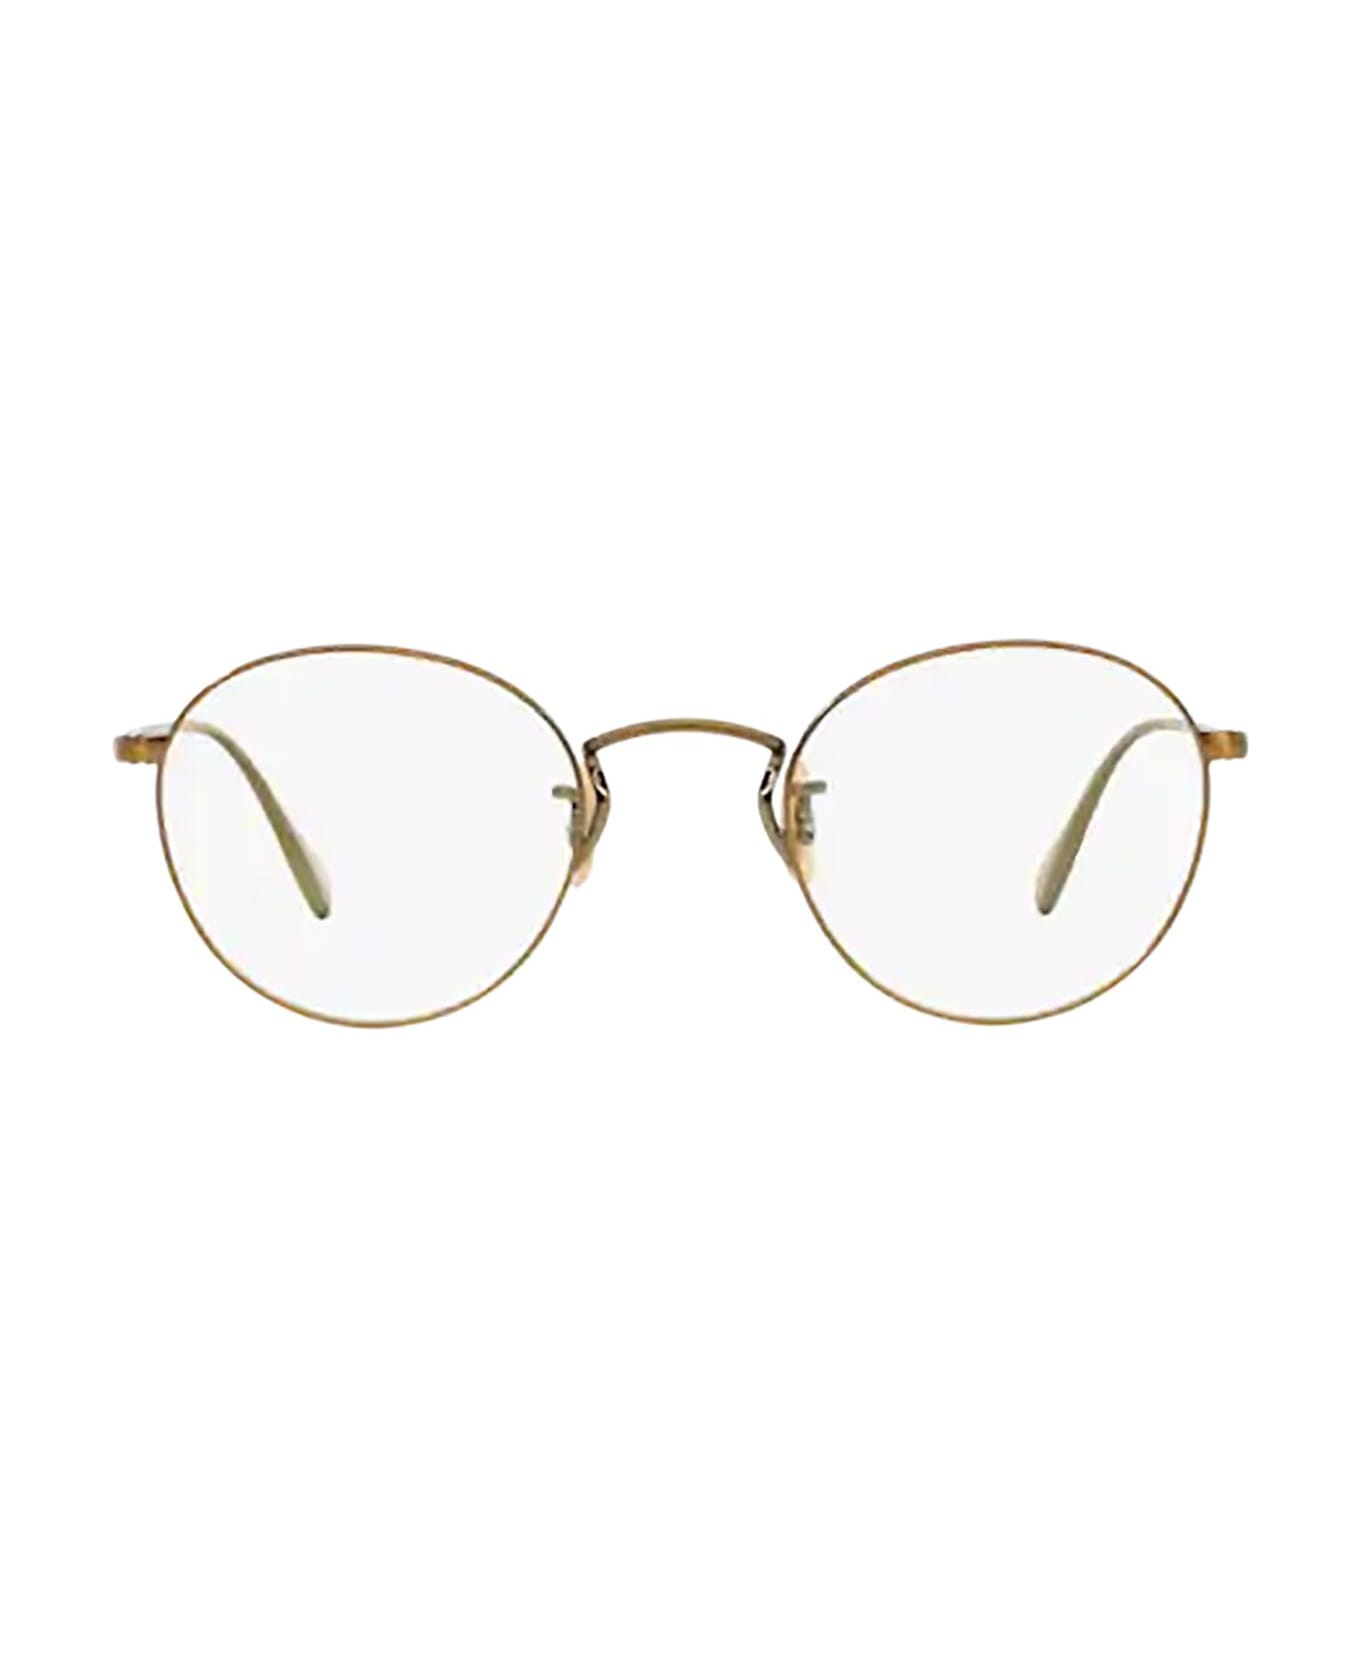 Oliver Peoples Ov1186 Antique Gold Glasses - Antique Gold